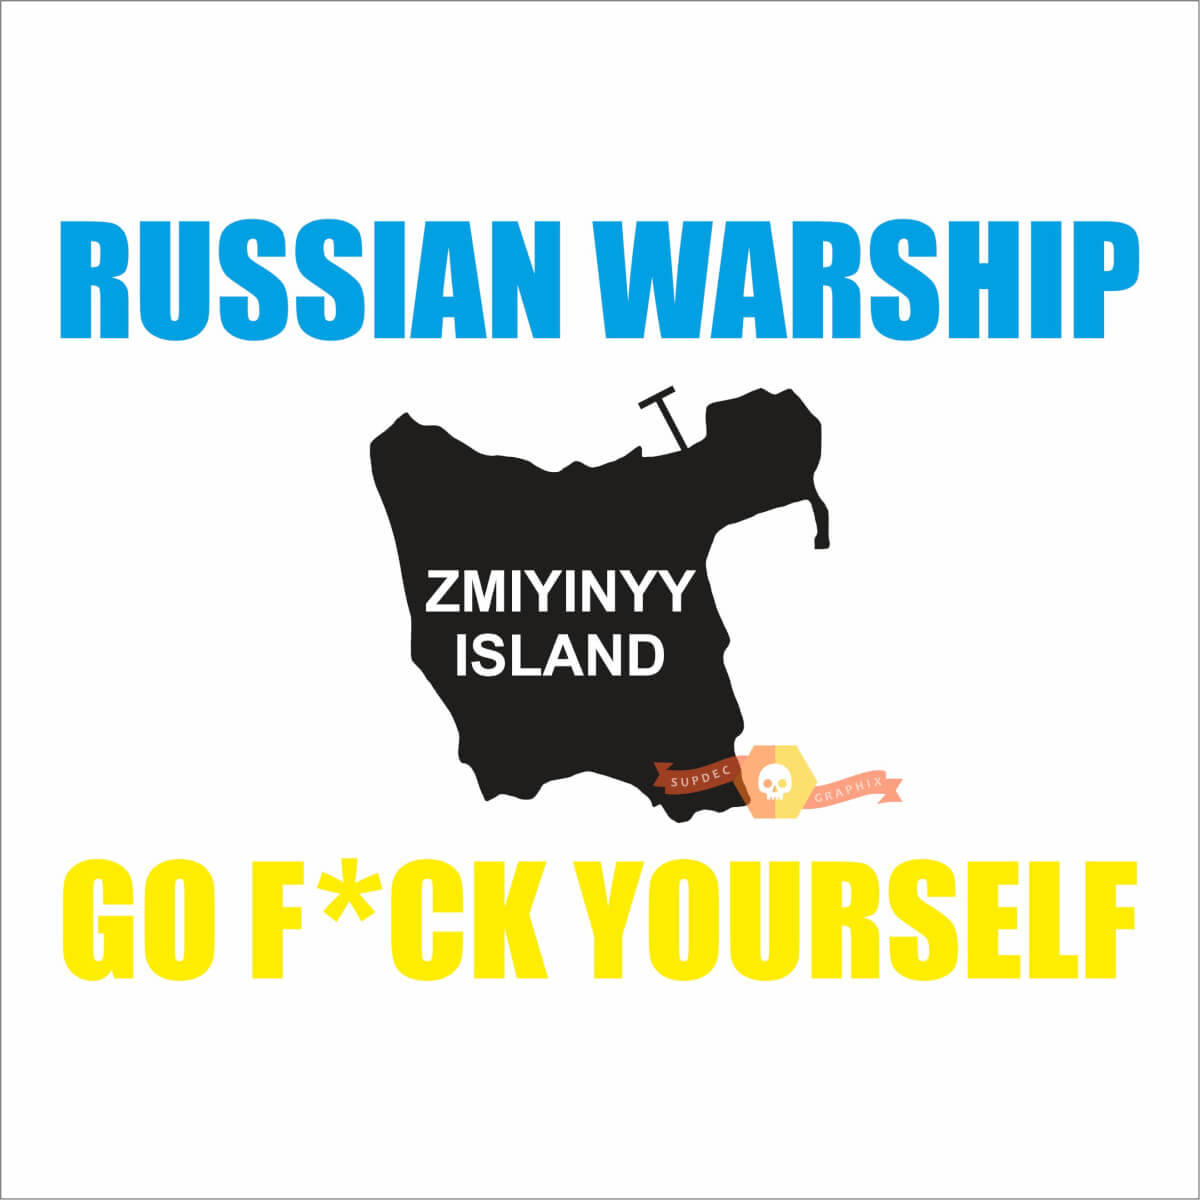 Nave da guerra russa, vai a scopare te stesso lo slogan ucraino